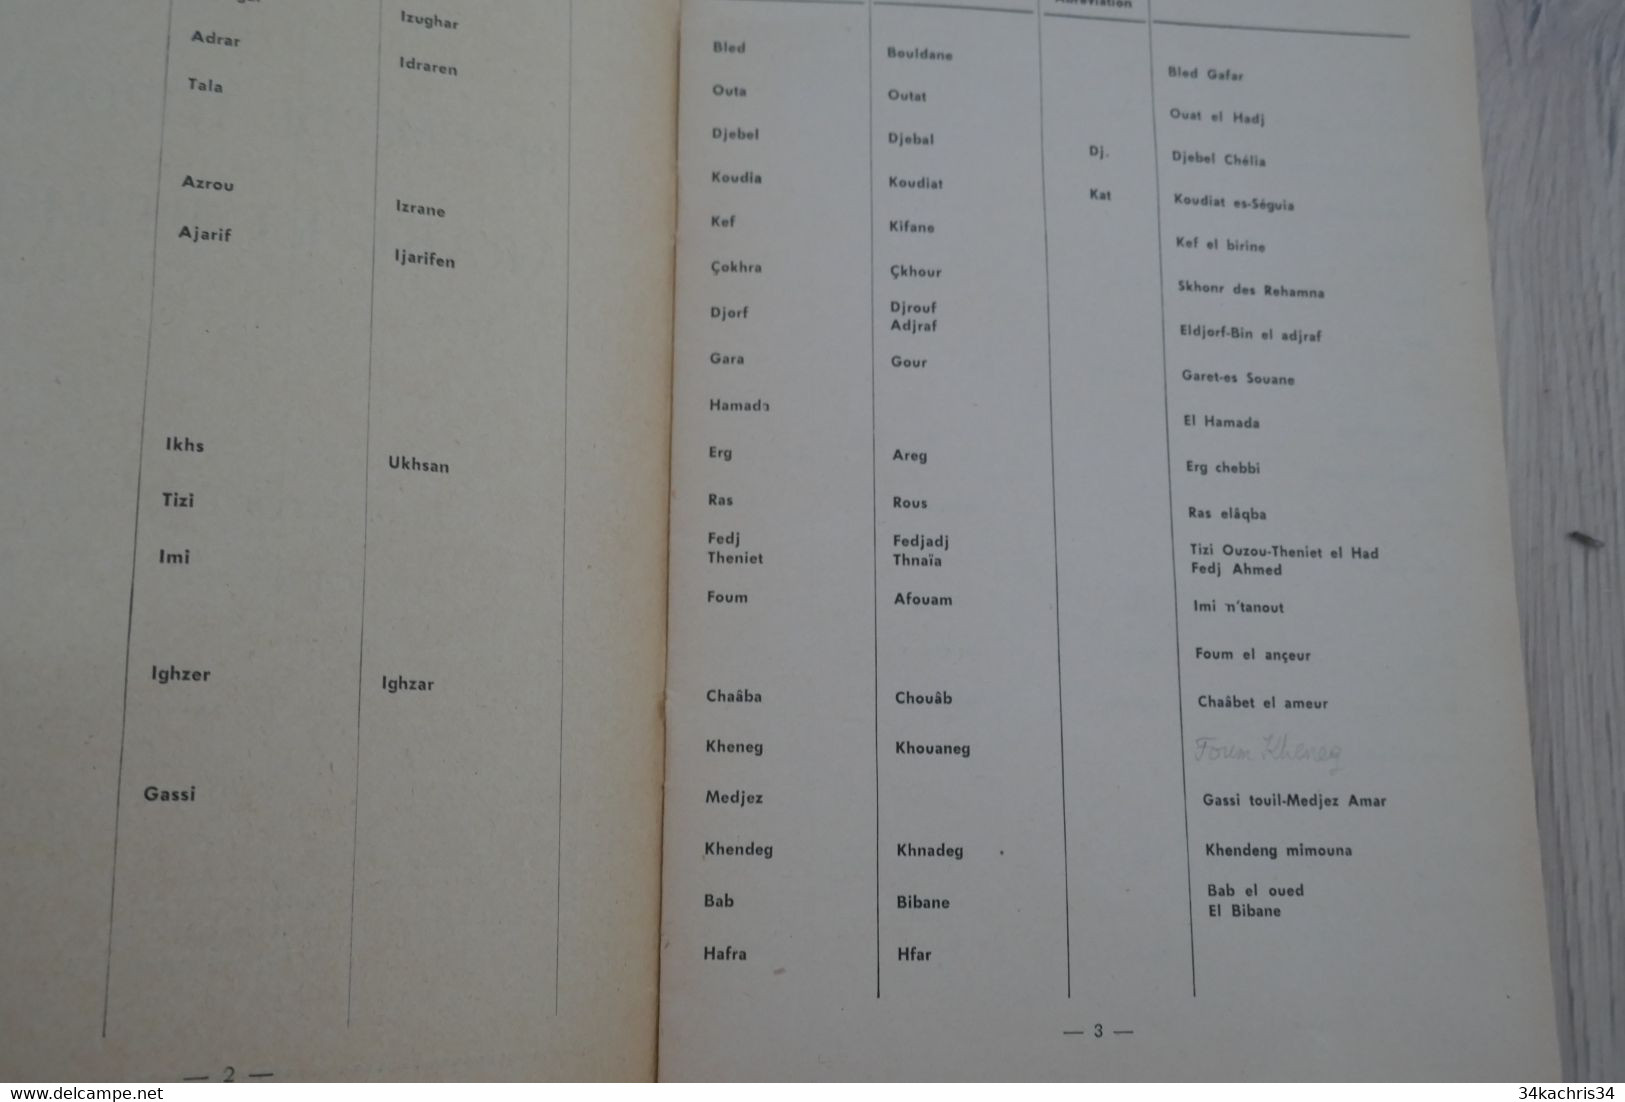 Plaquette 1959 Résumé De Toponymie Arabe Et Berbère Pour Servir à La Lecture Des Cartes A.F.N. 19p+ Carte - Documenten